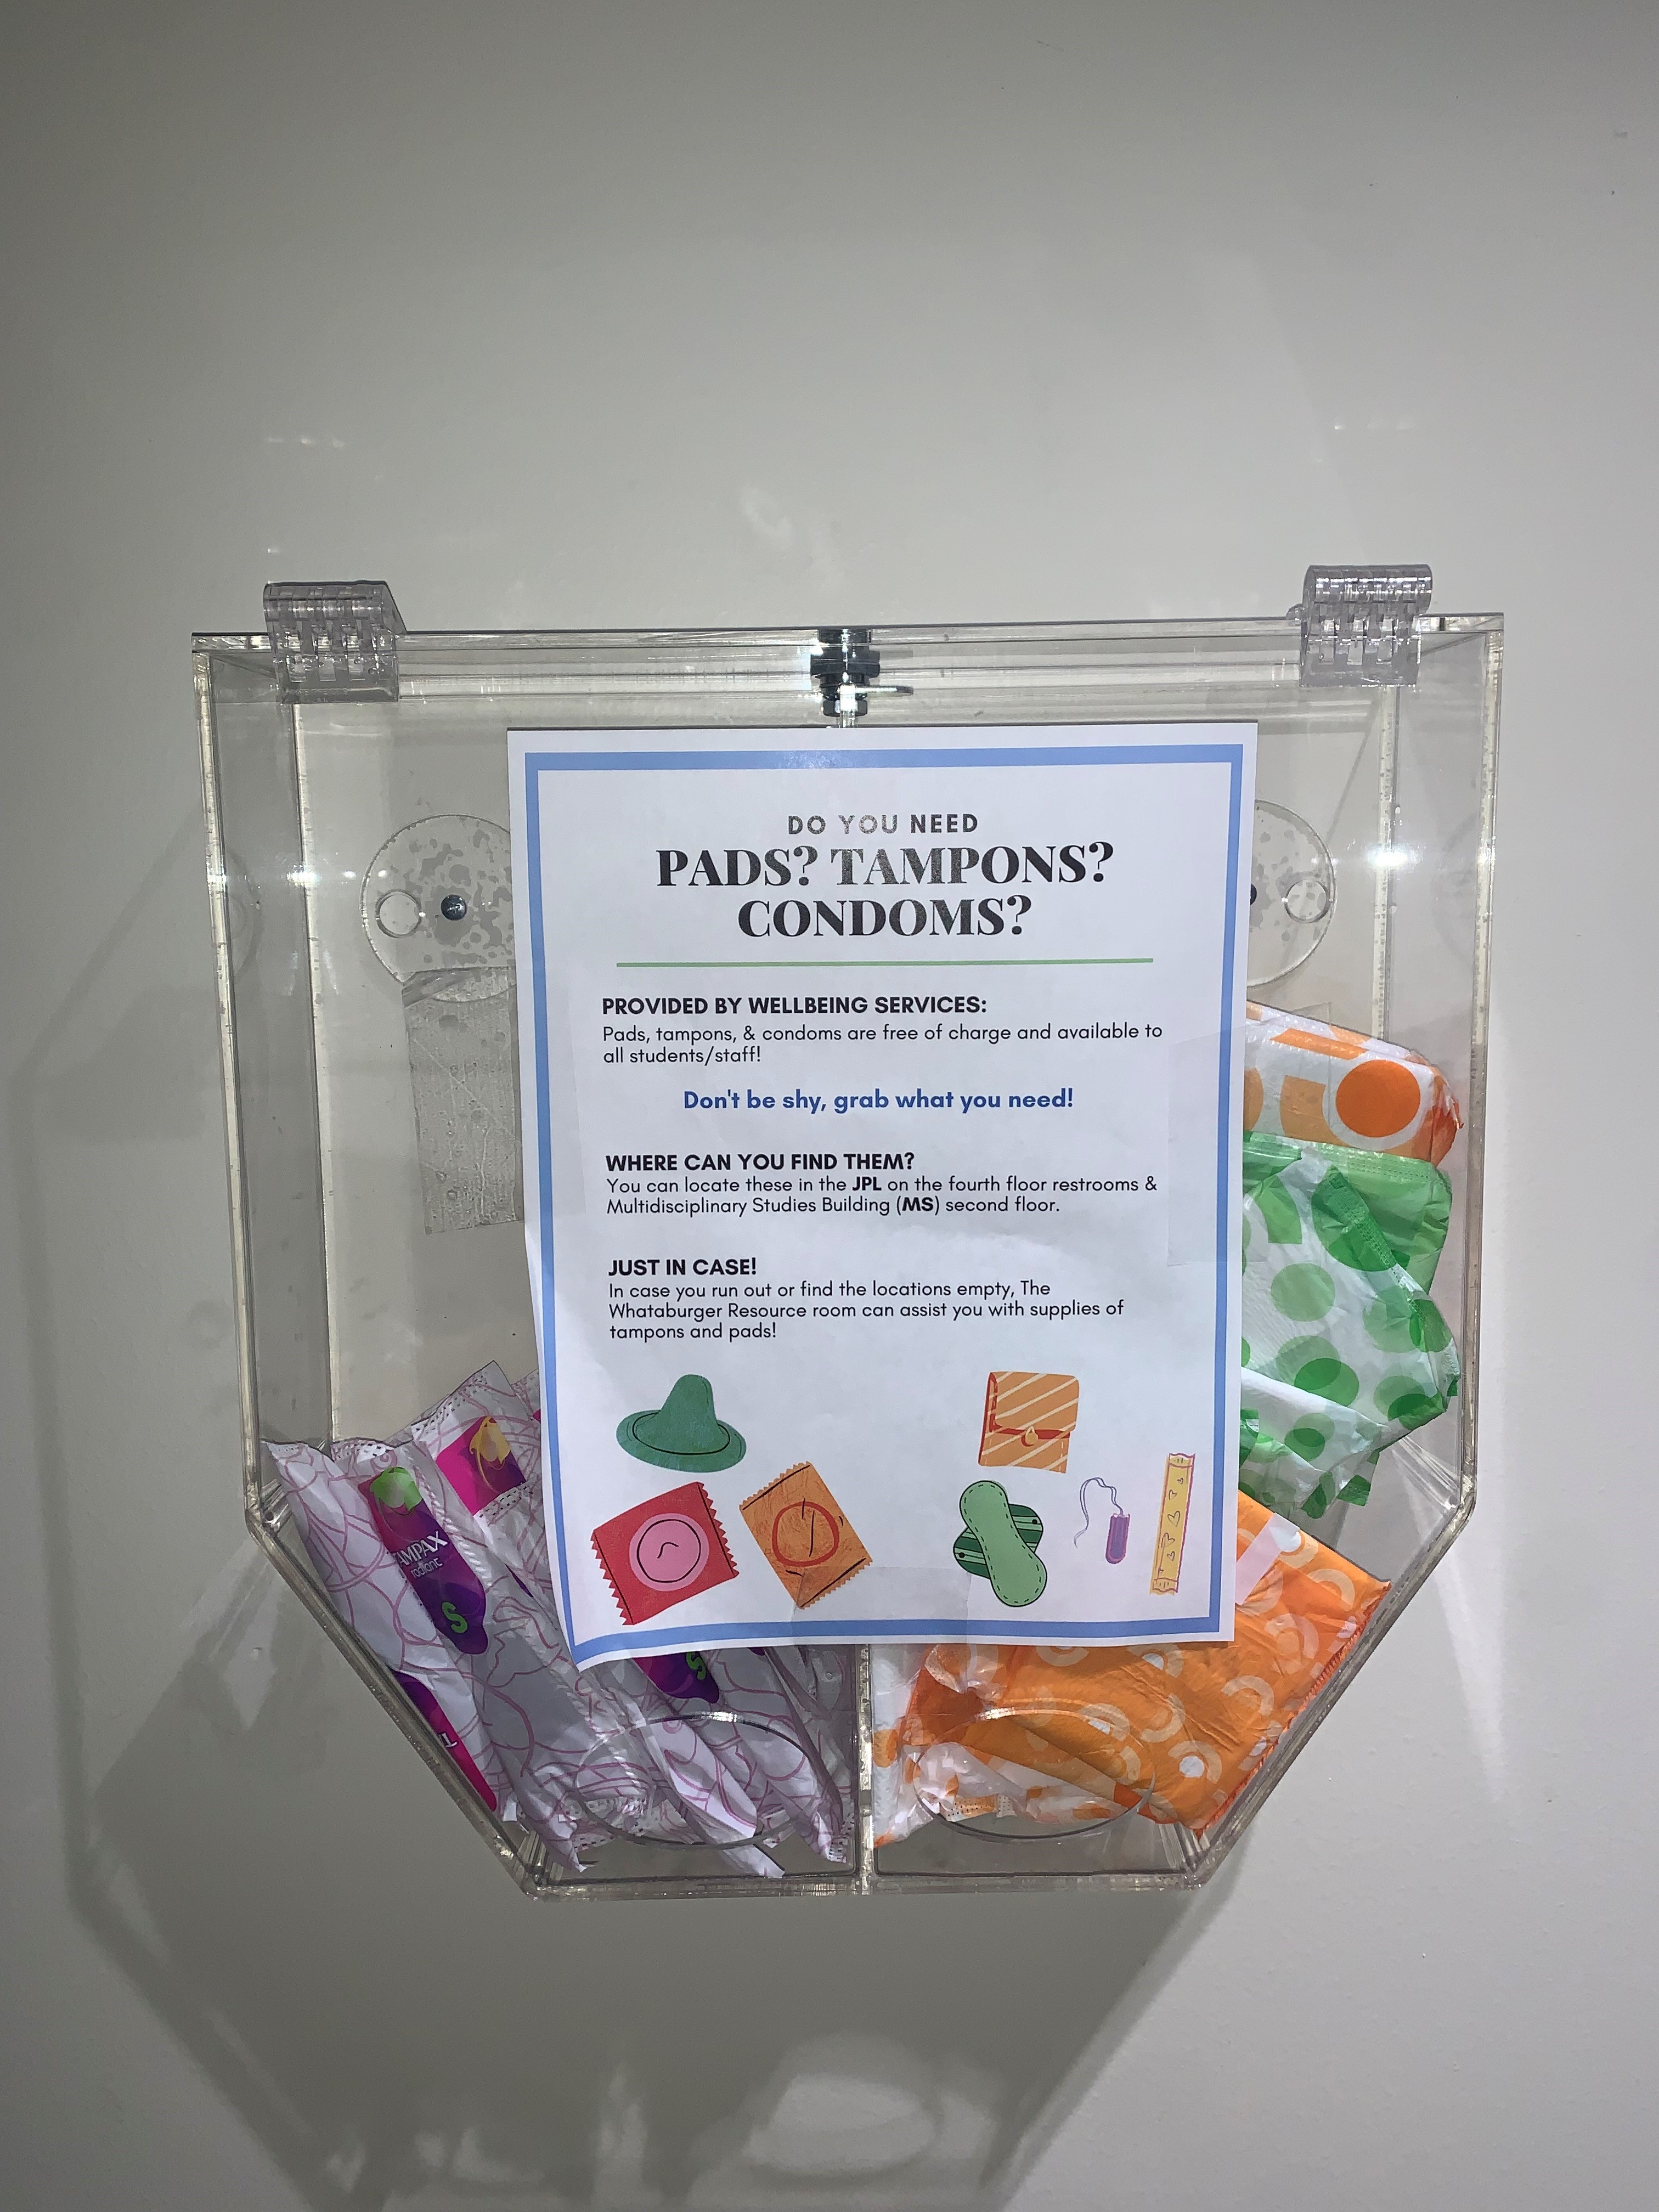 Menstrual-Hygiene-Product-Dispenser-JPL.jpg